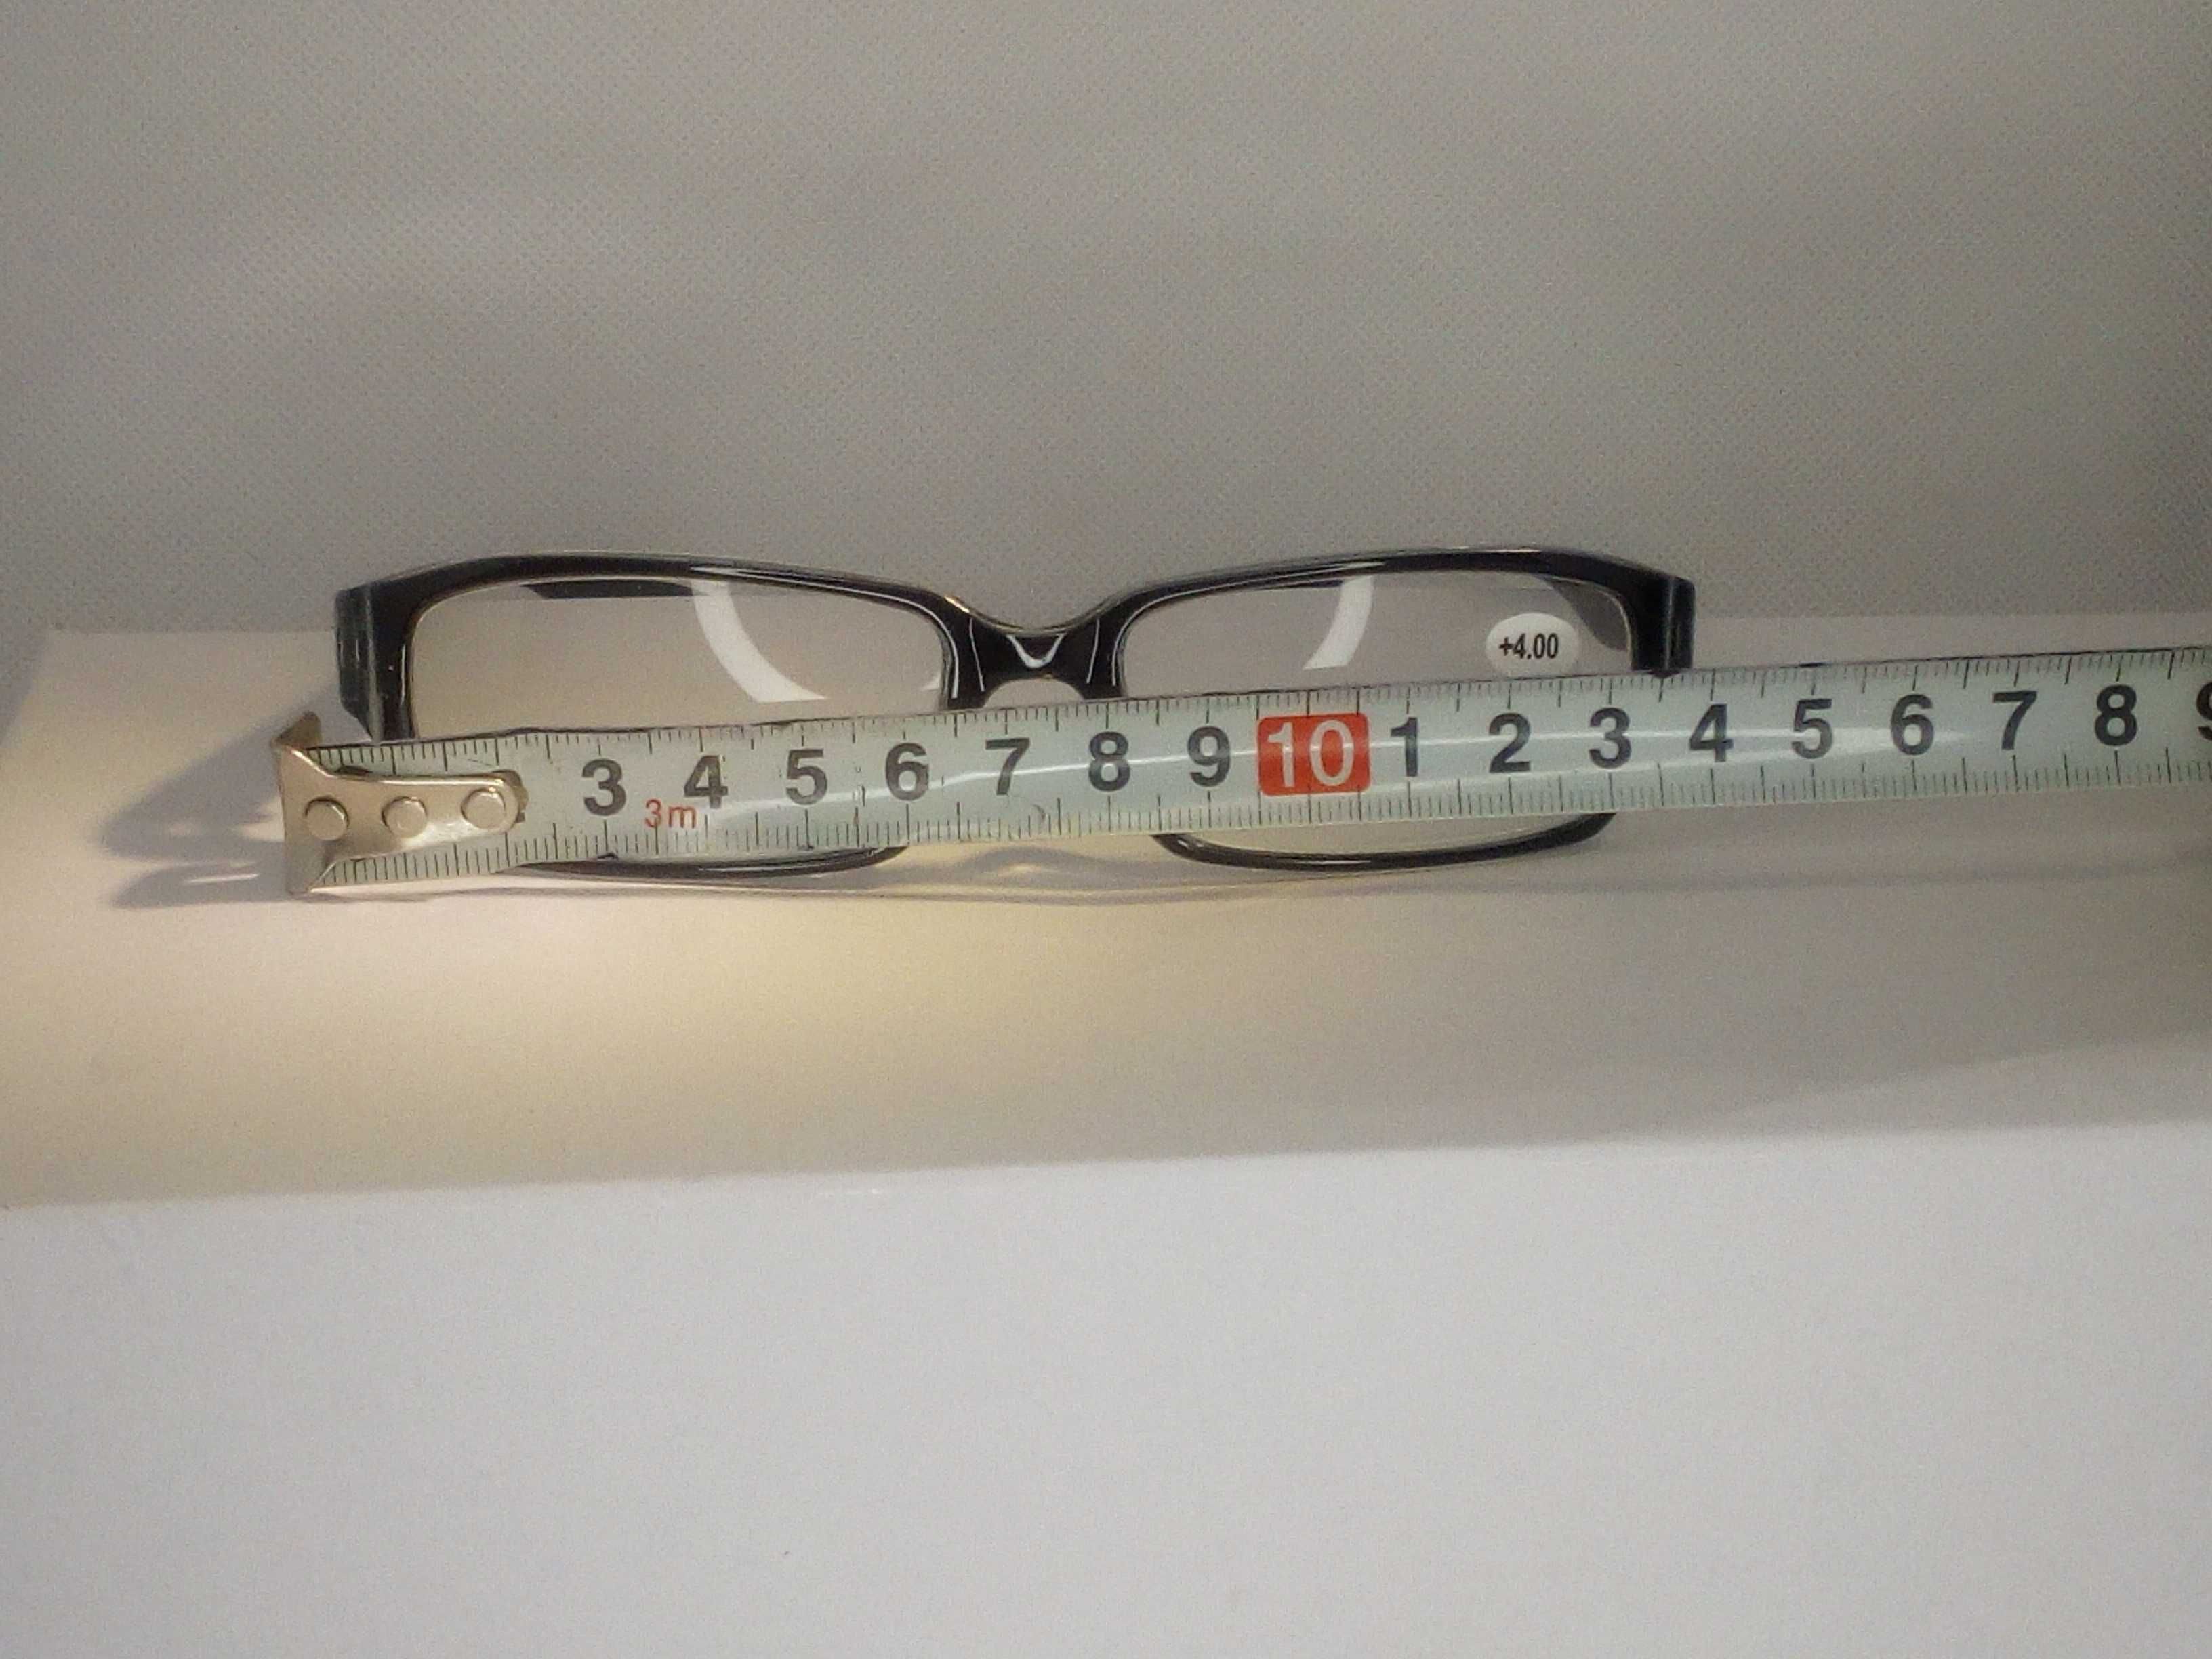 Okulary plusy do czytania korekcyjne +3.50 dioptrie